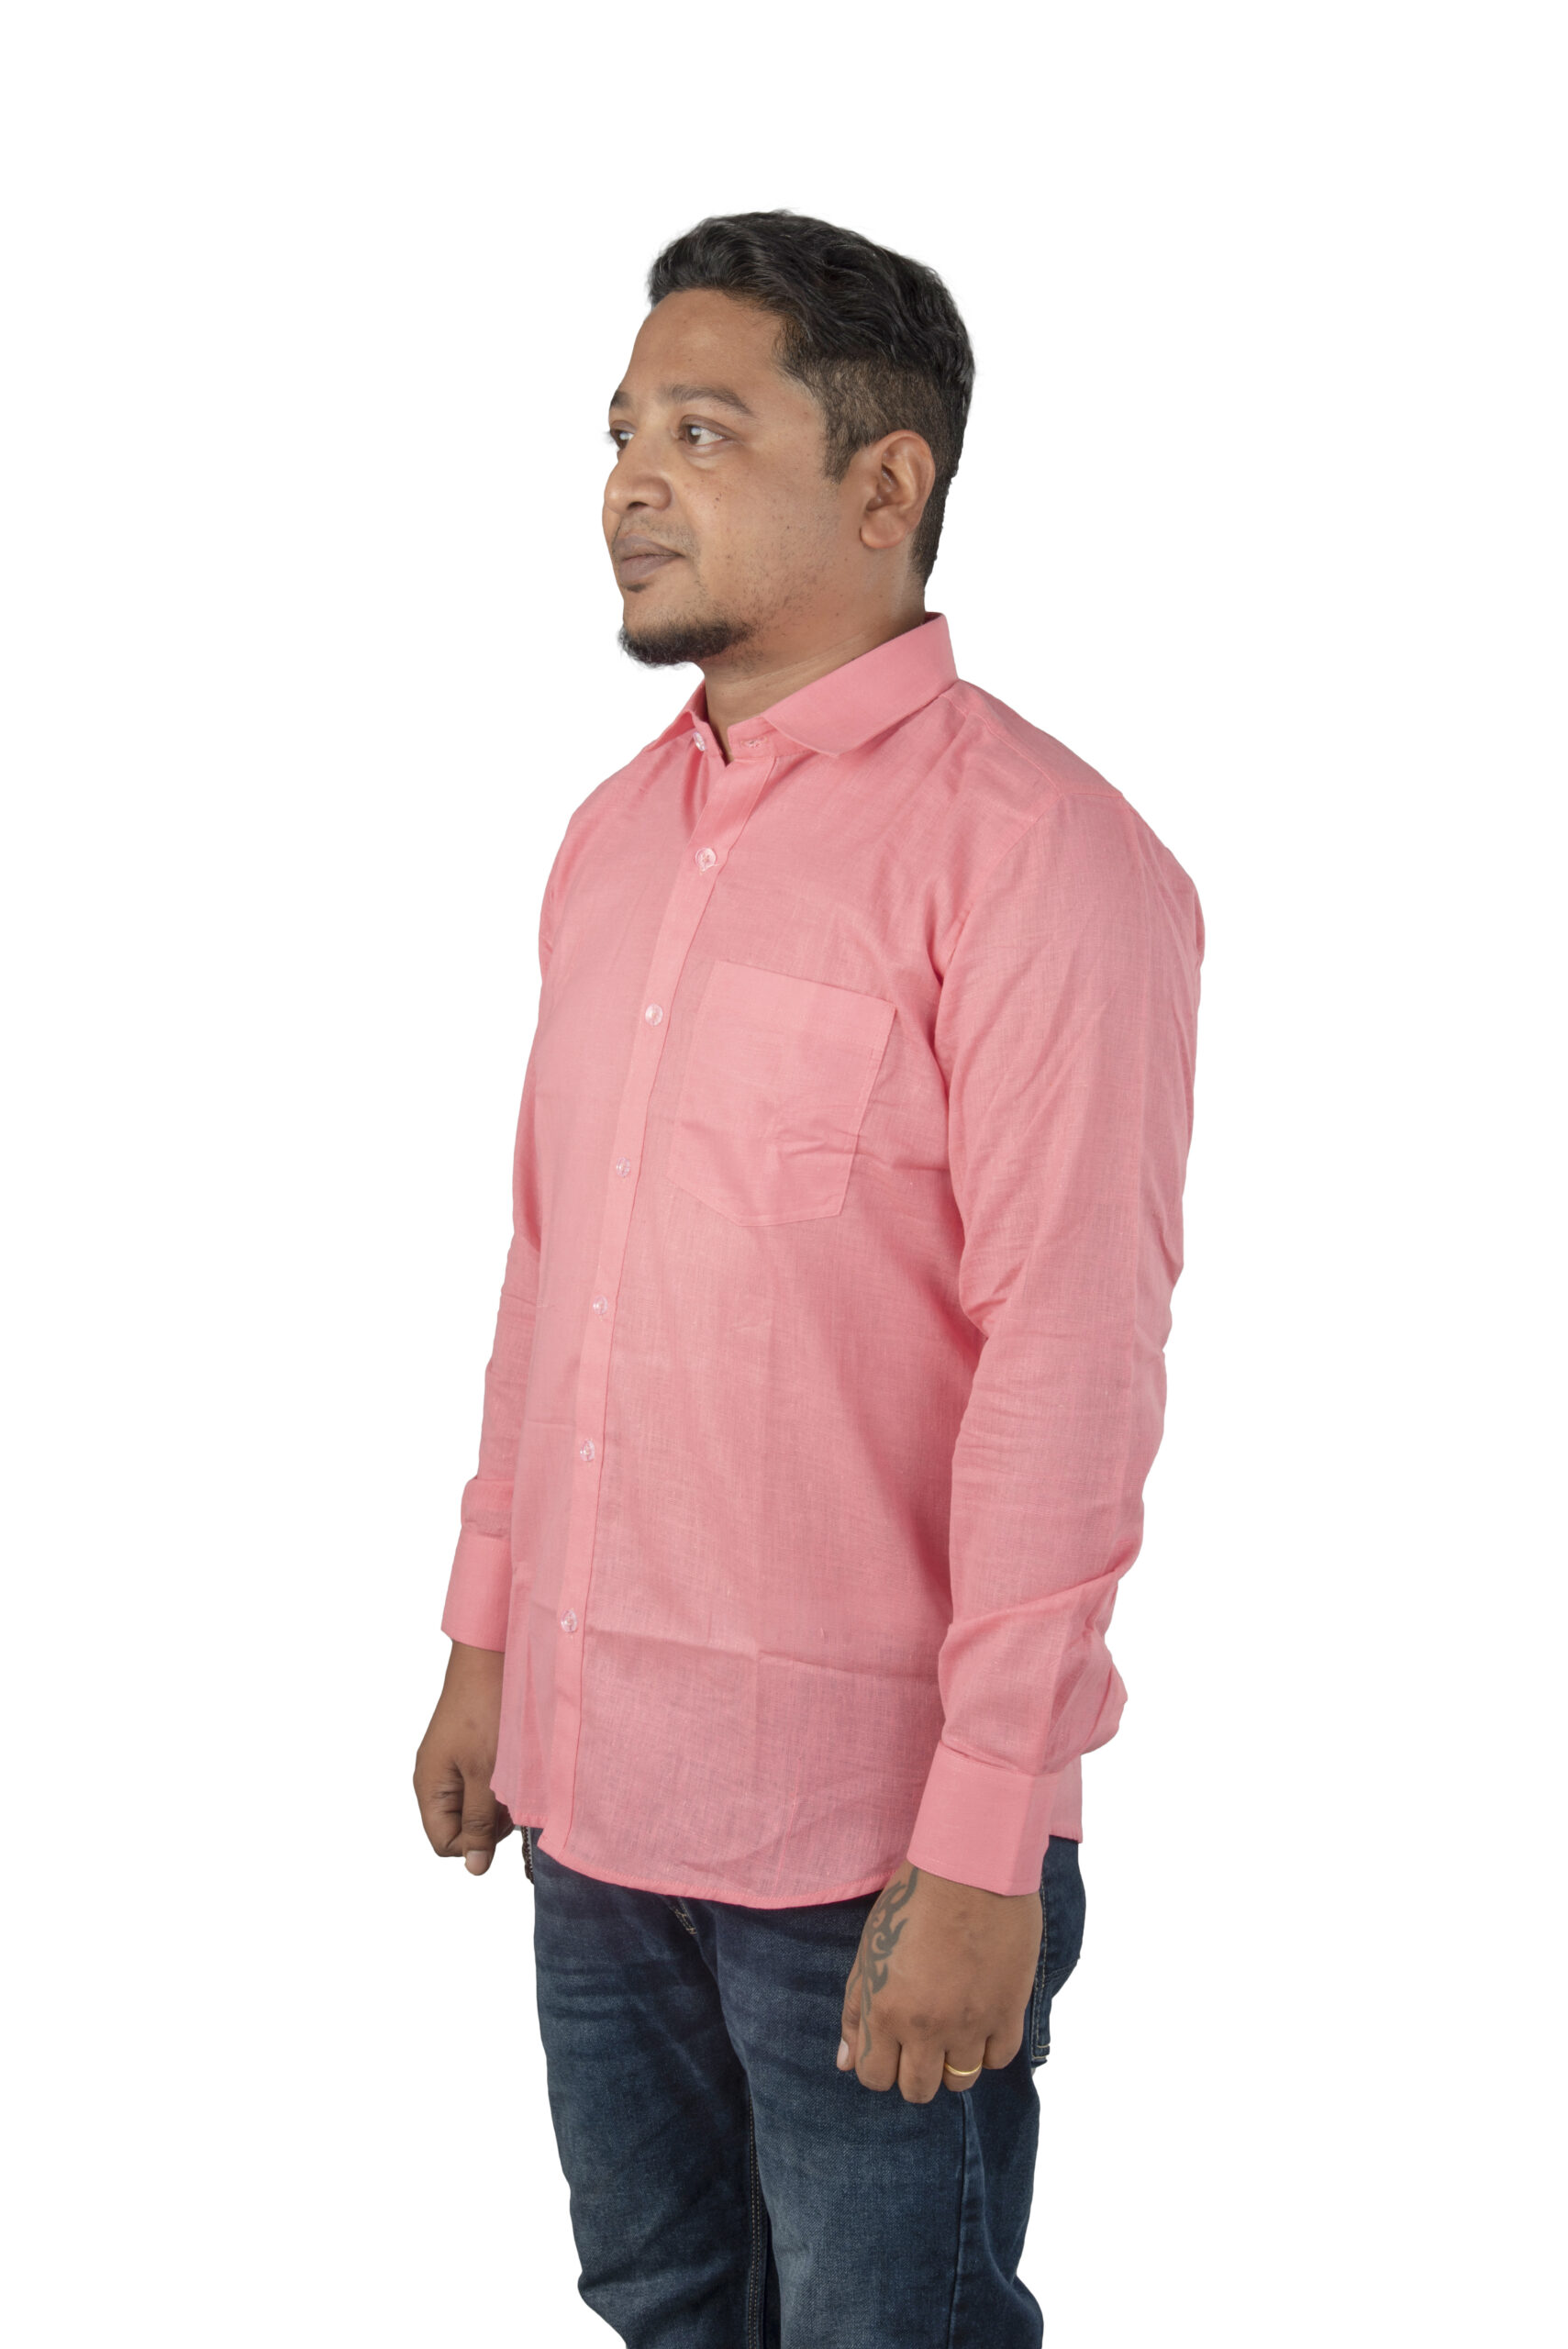 Handspun and Handwoven double thread Muslin Khadi pink Formal Shirt